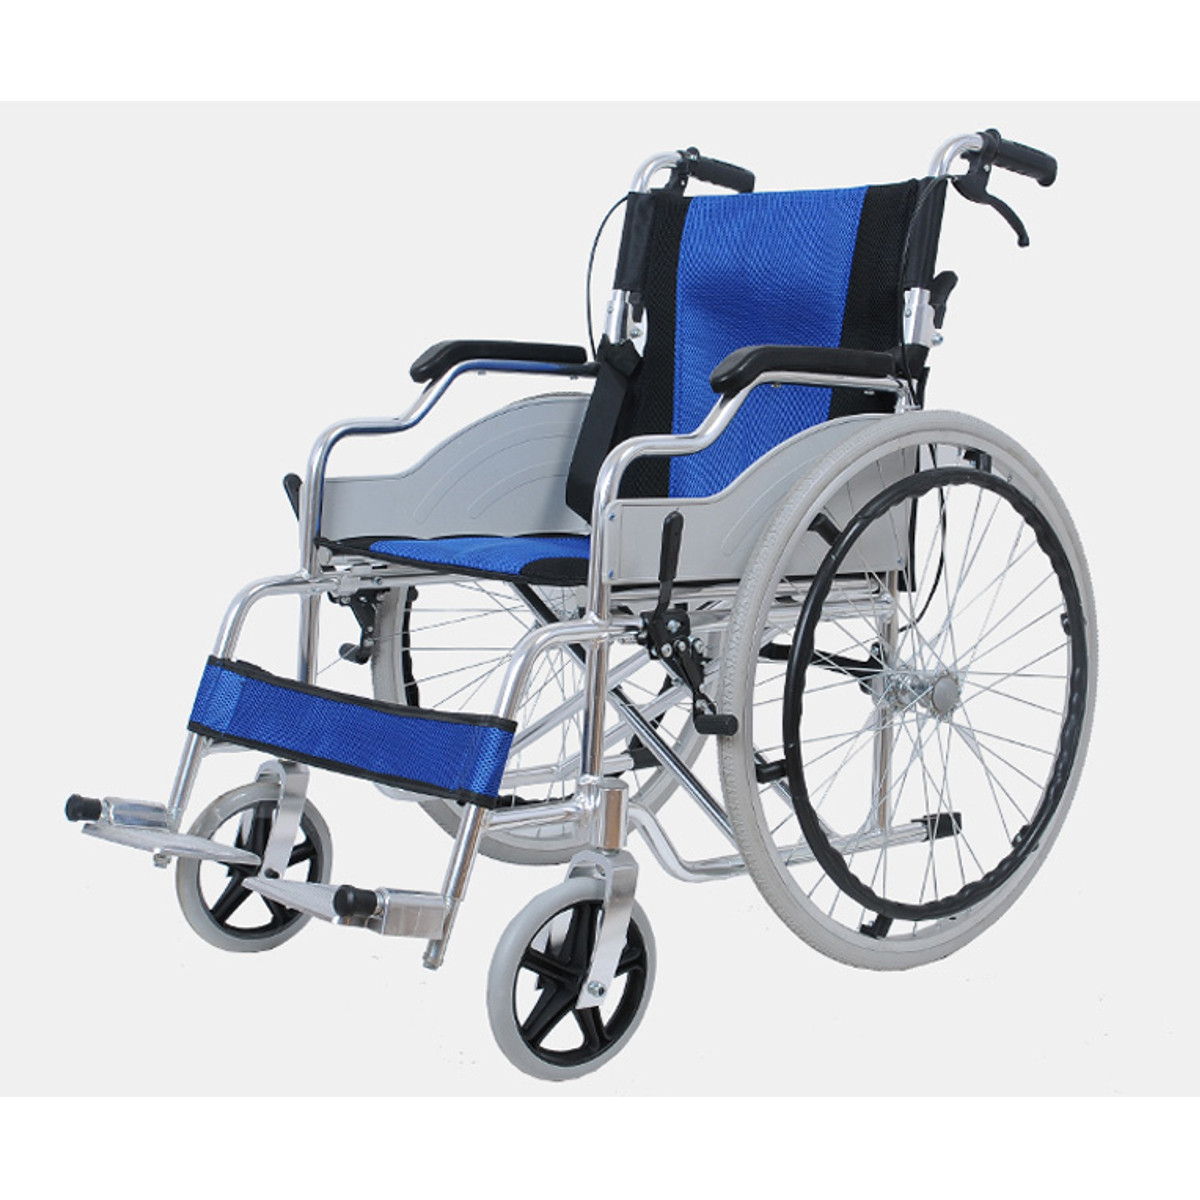 

Aluminum Lightweight Transit Folding Chair Wheelchair